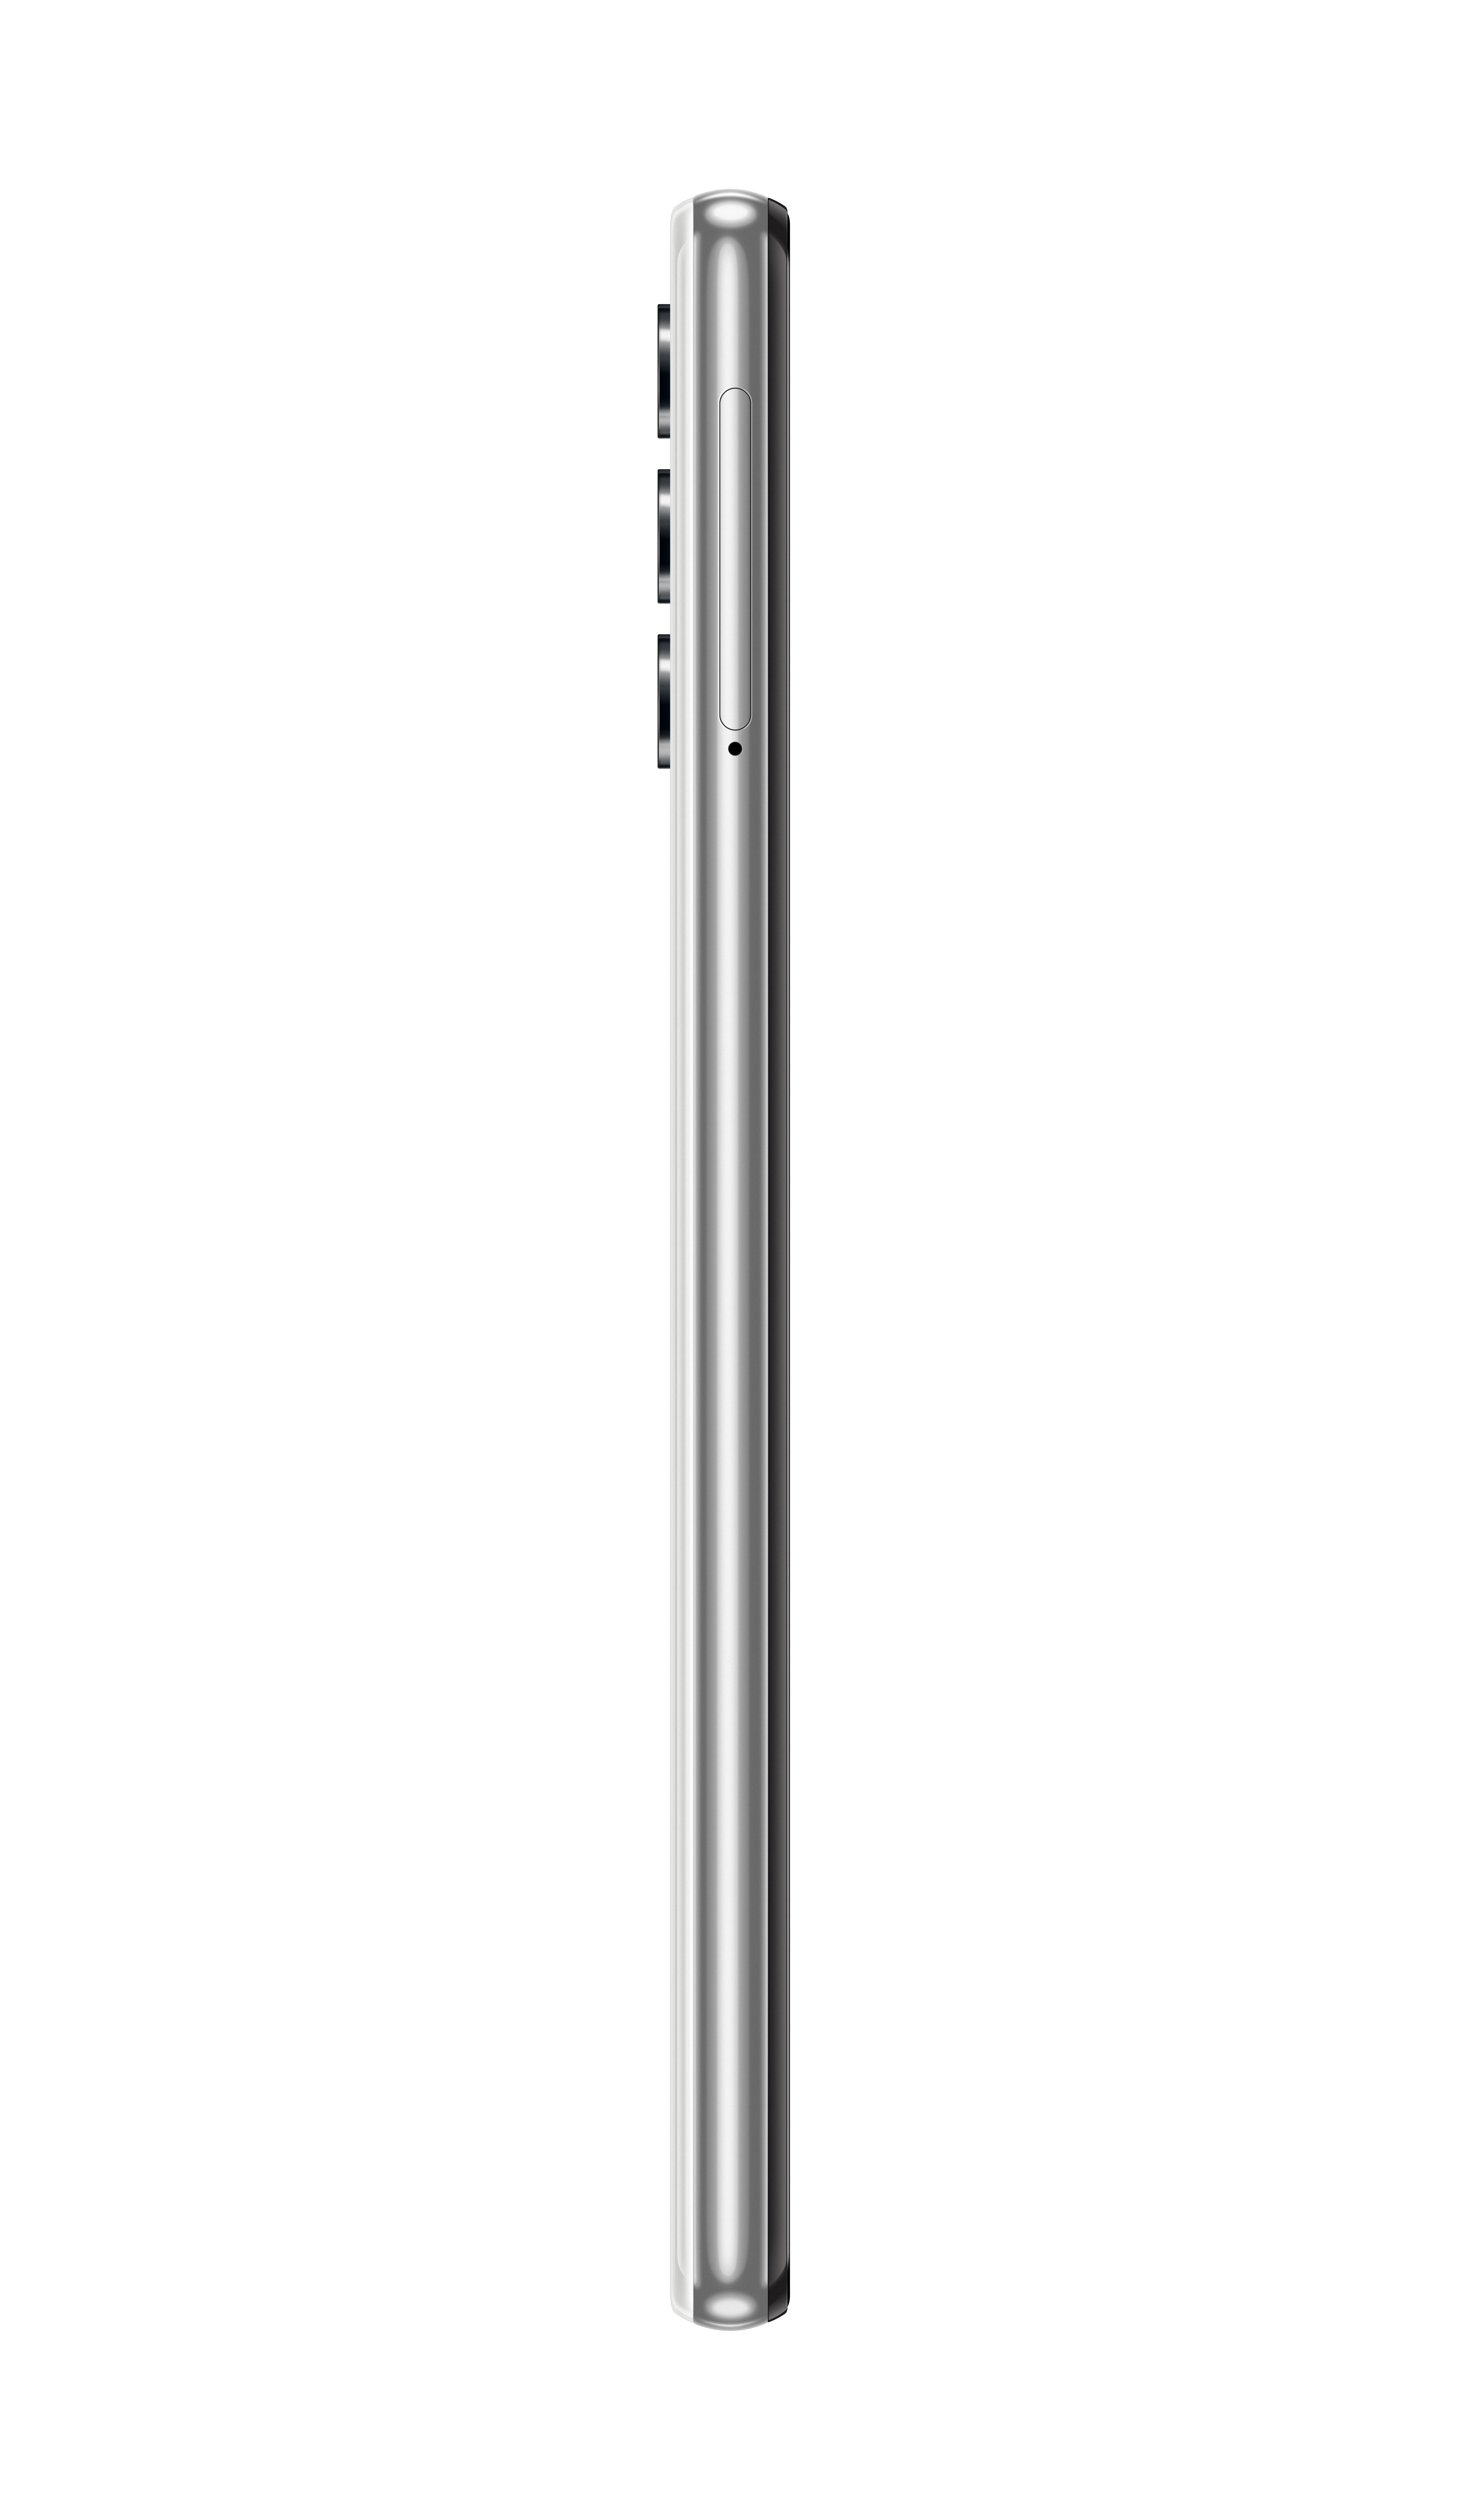 SAMSUNG Galaxy A32 5G 64 GB Dual SIM Weiss